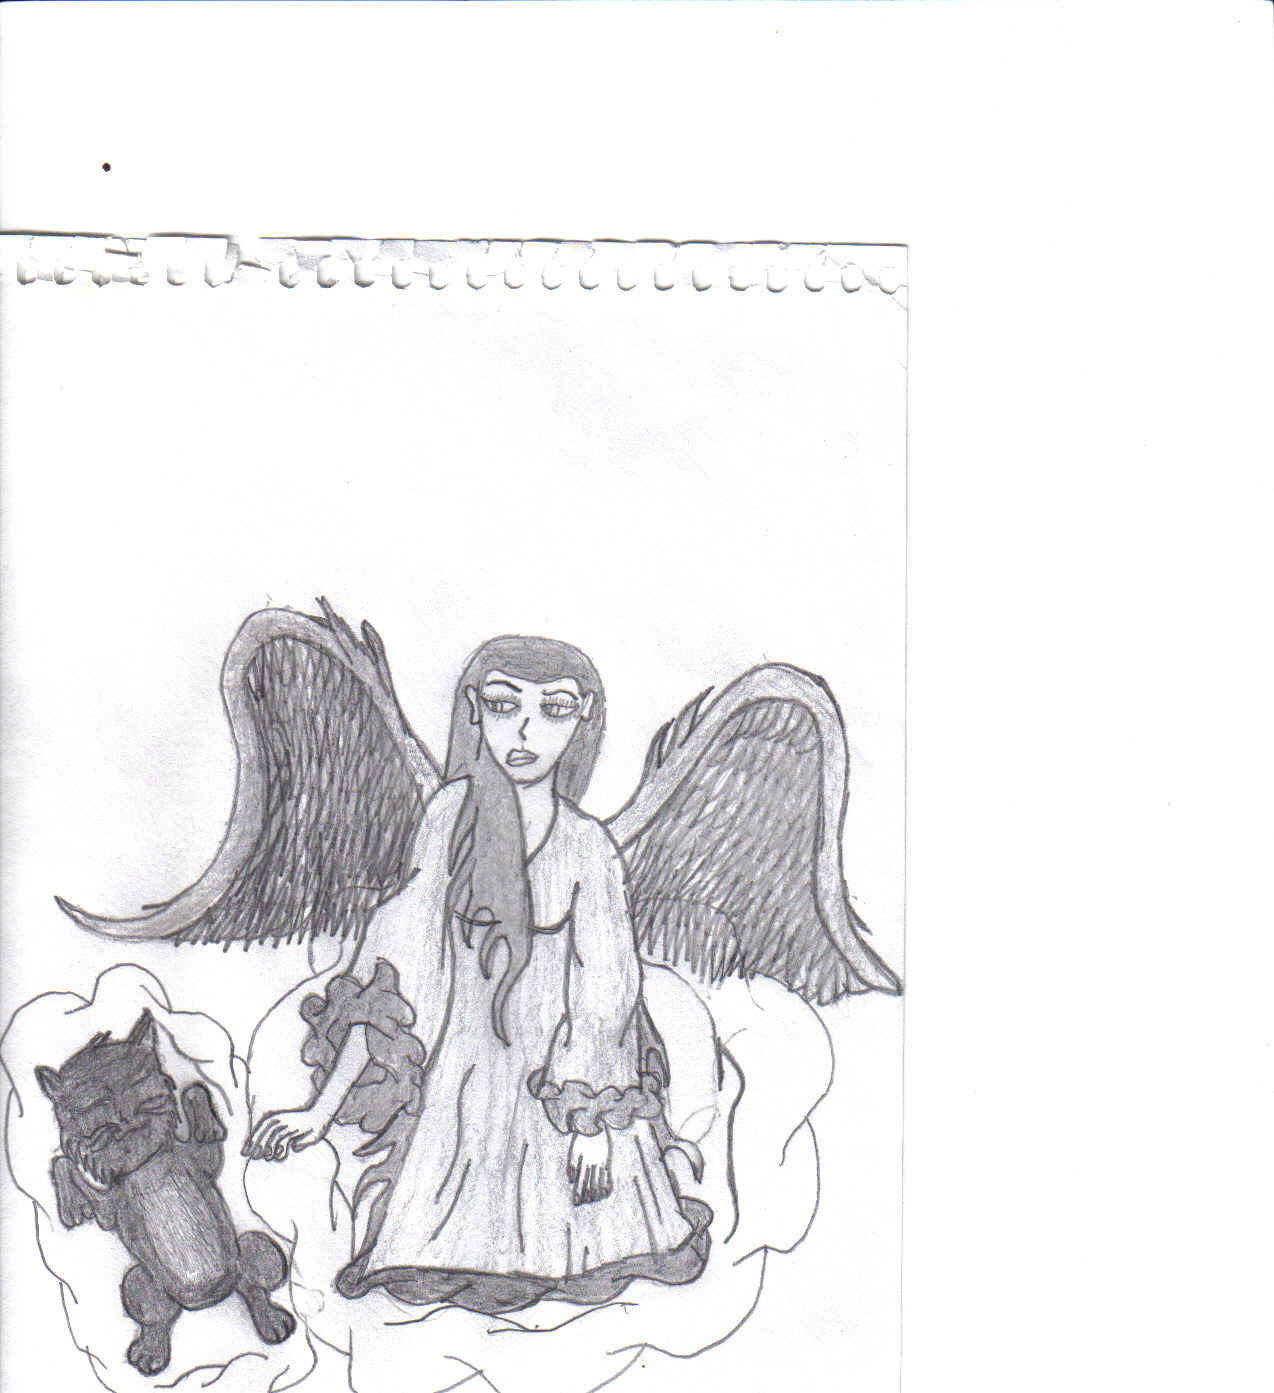 Angels pet by Dragonman343